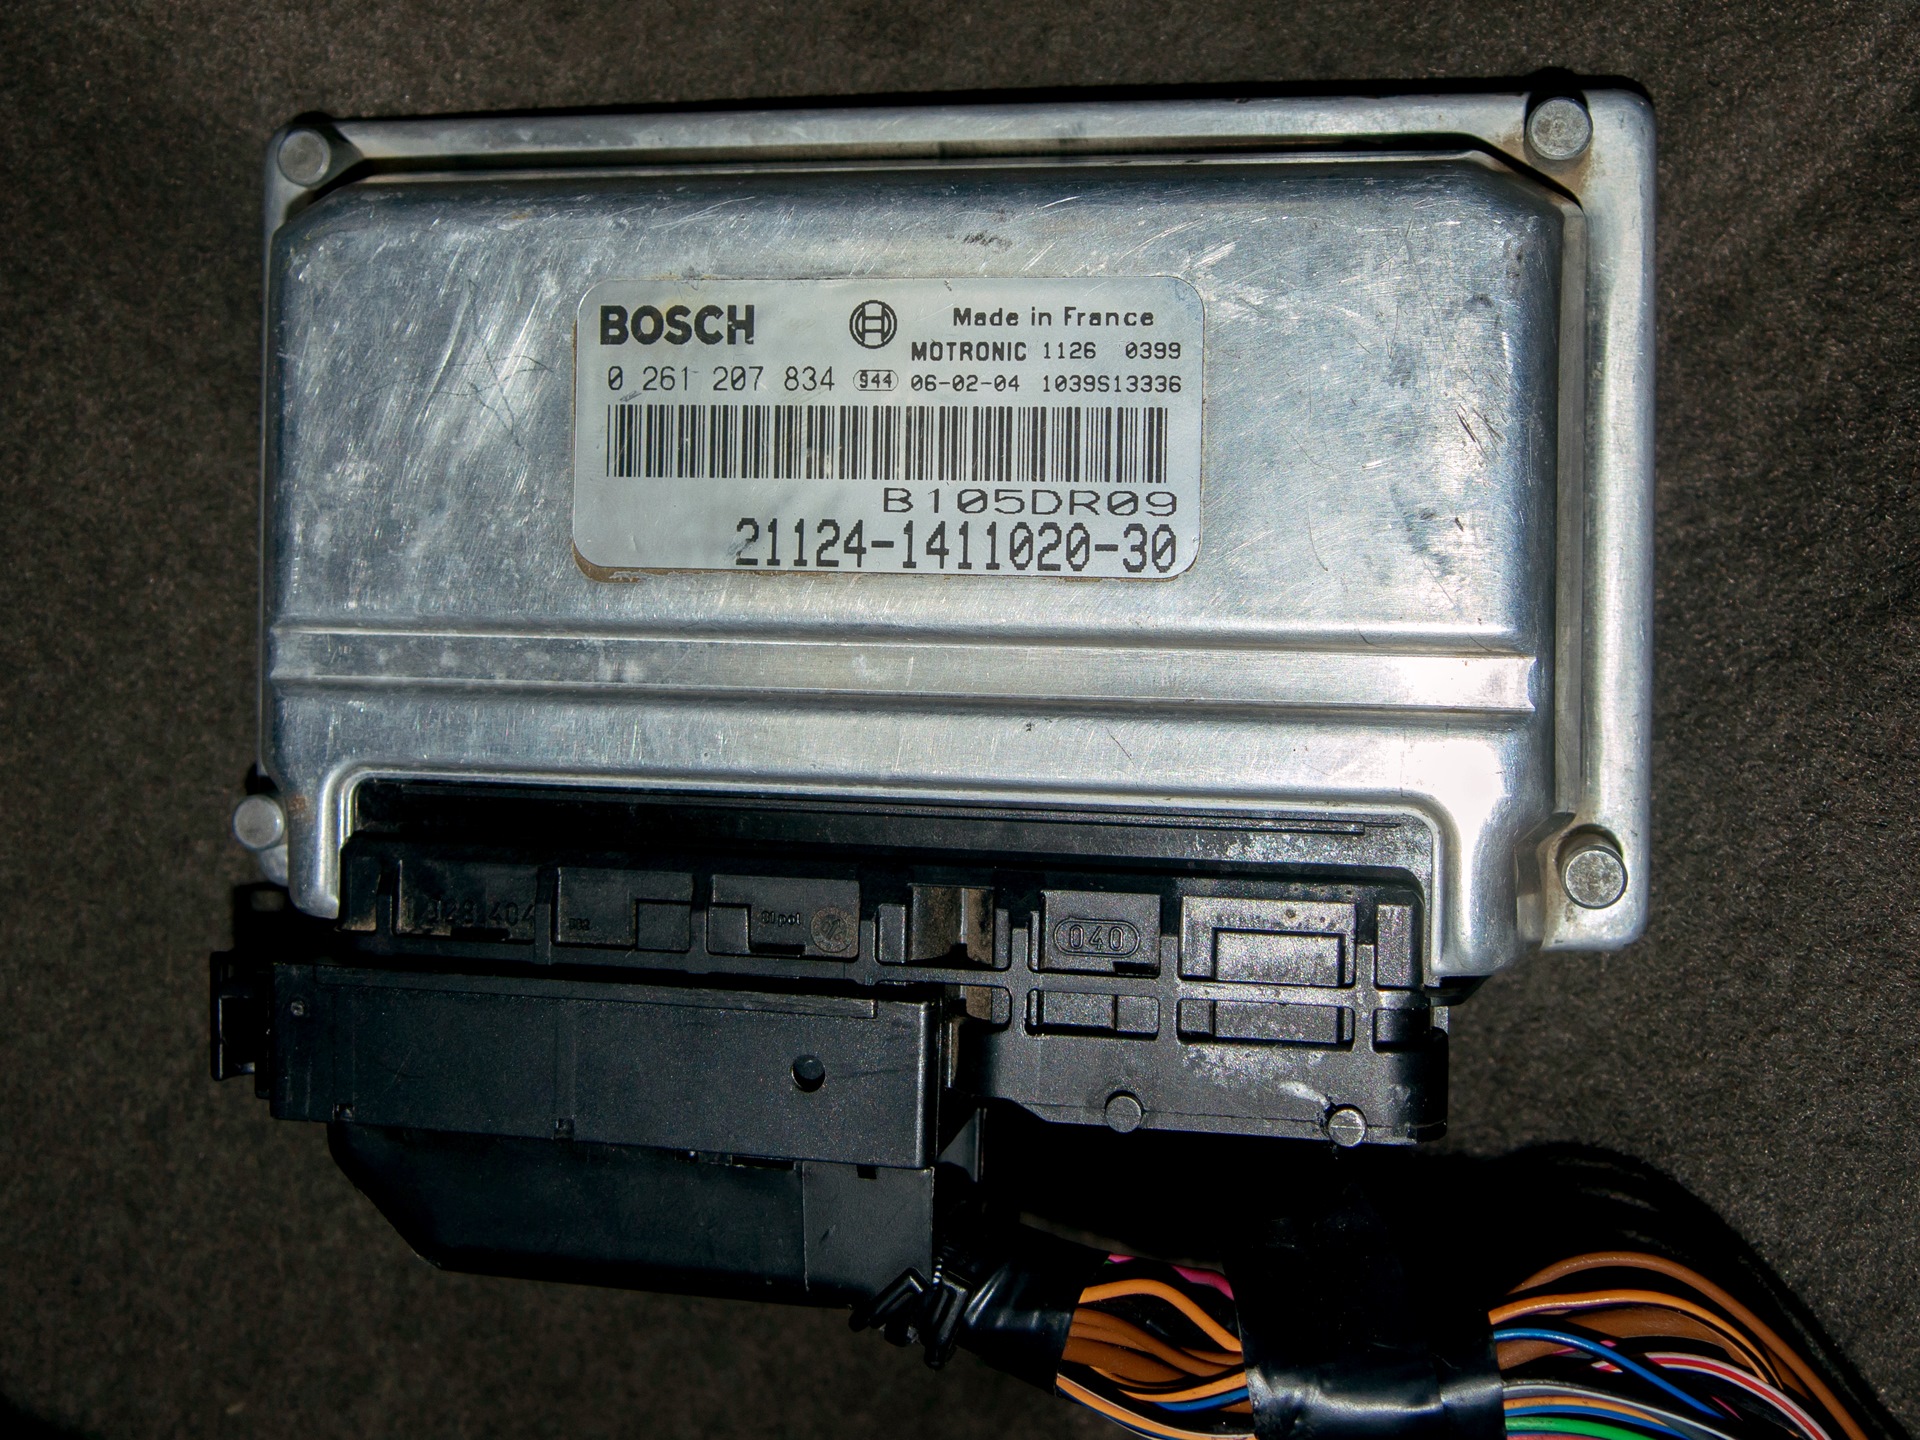 Мозги бош ваз. ЭБУ Bosch Motronic b105dn08. Блок управления Motronic Bosch 2121-1411020-60. ЭБУ Bosch Motronic 1126 0247 22yc041s. Мозги бош 21124.